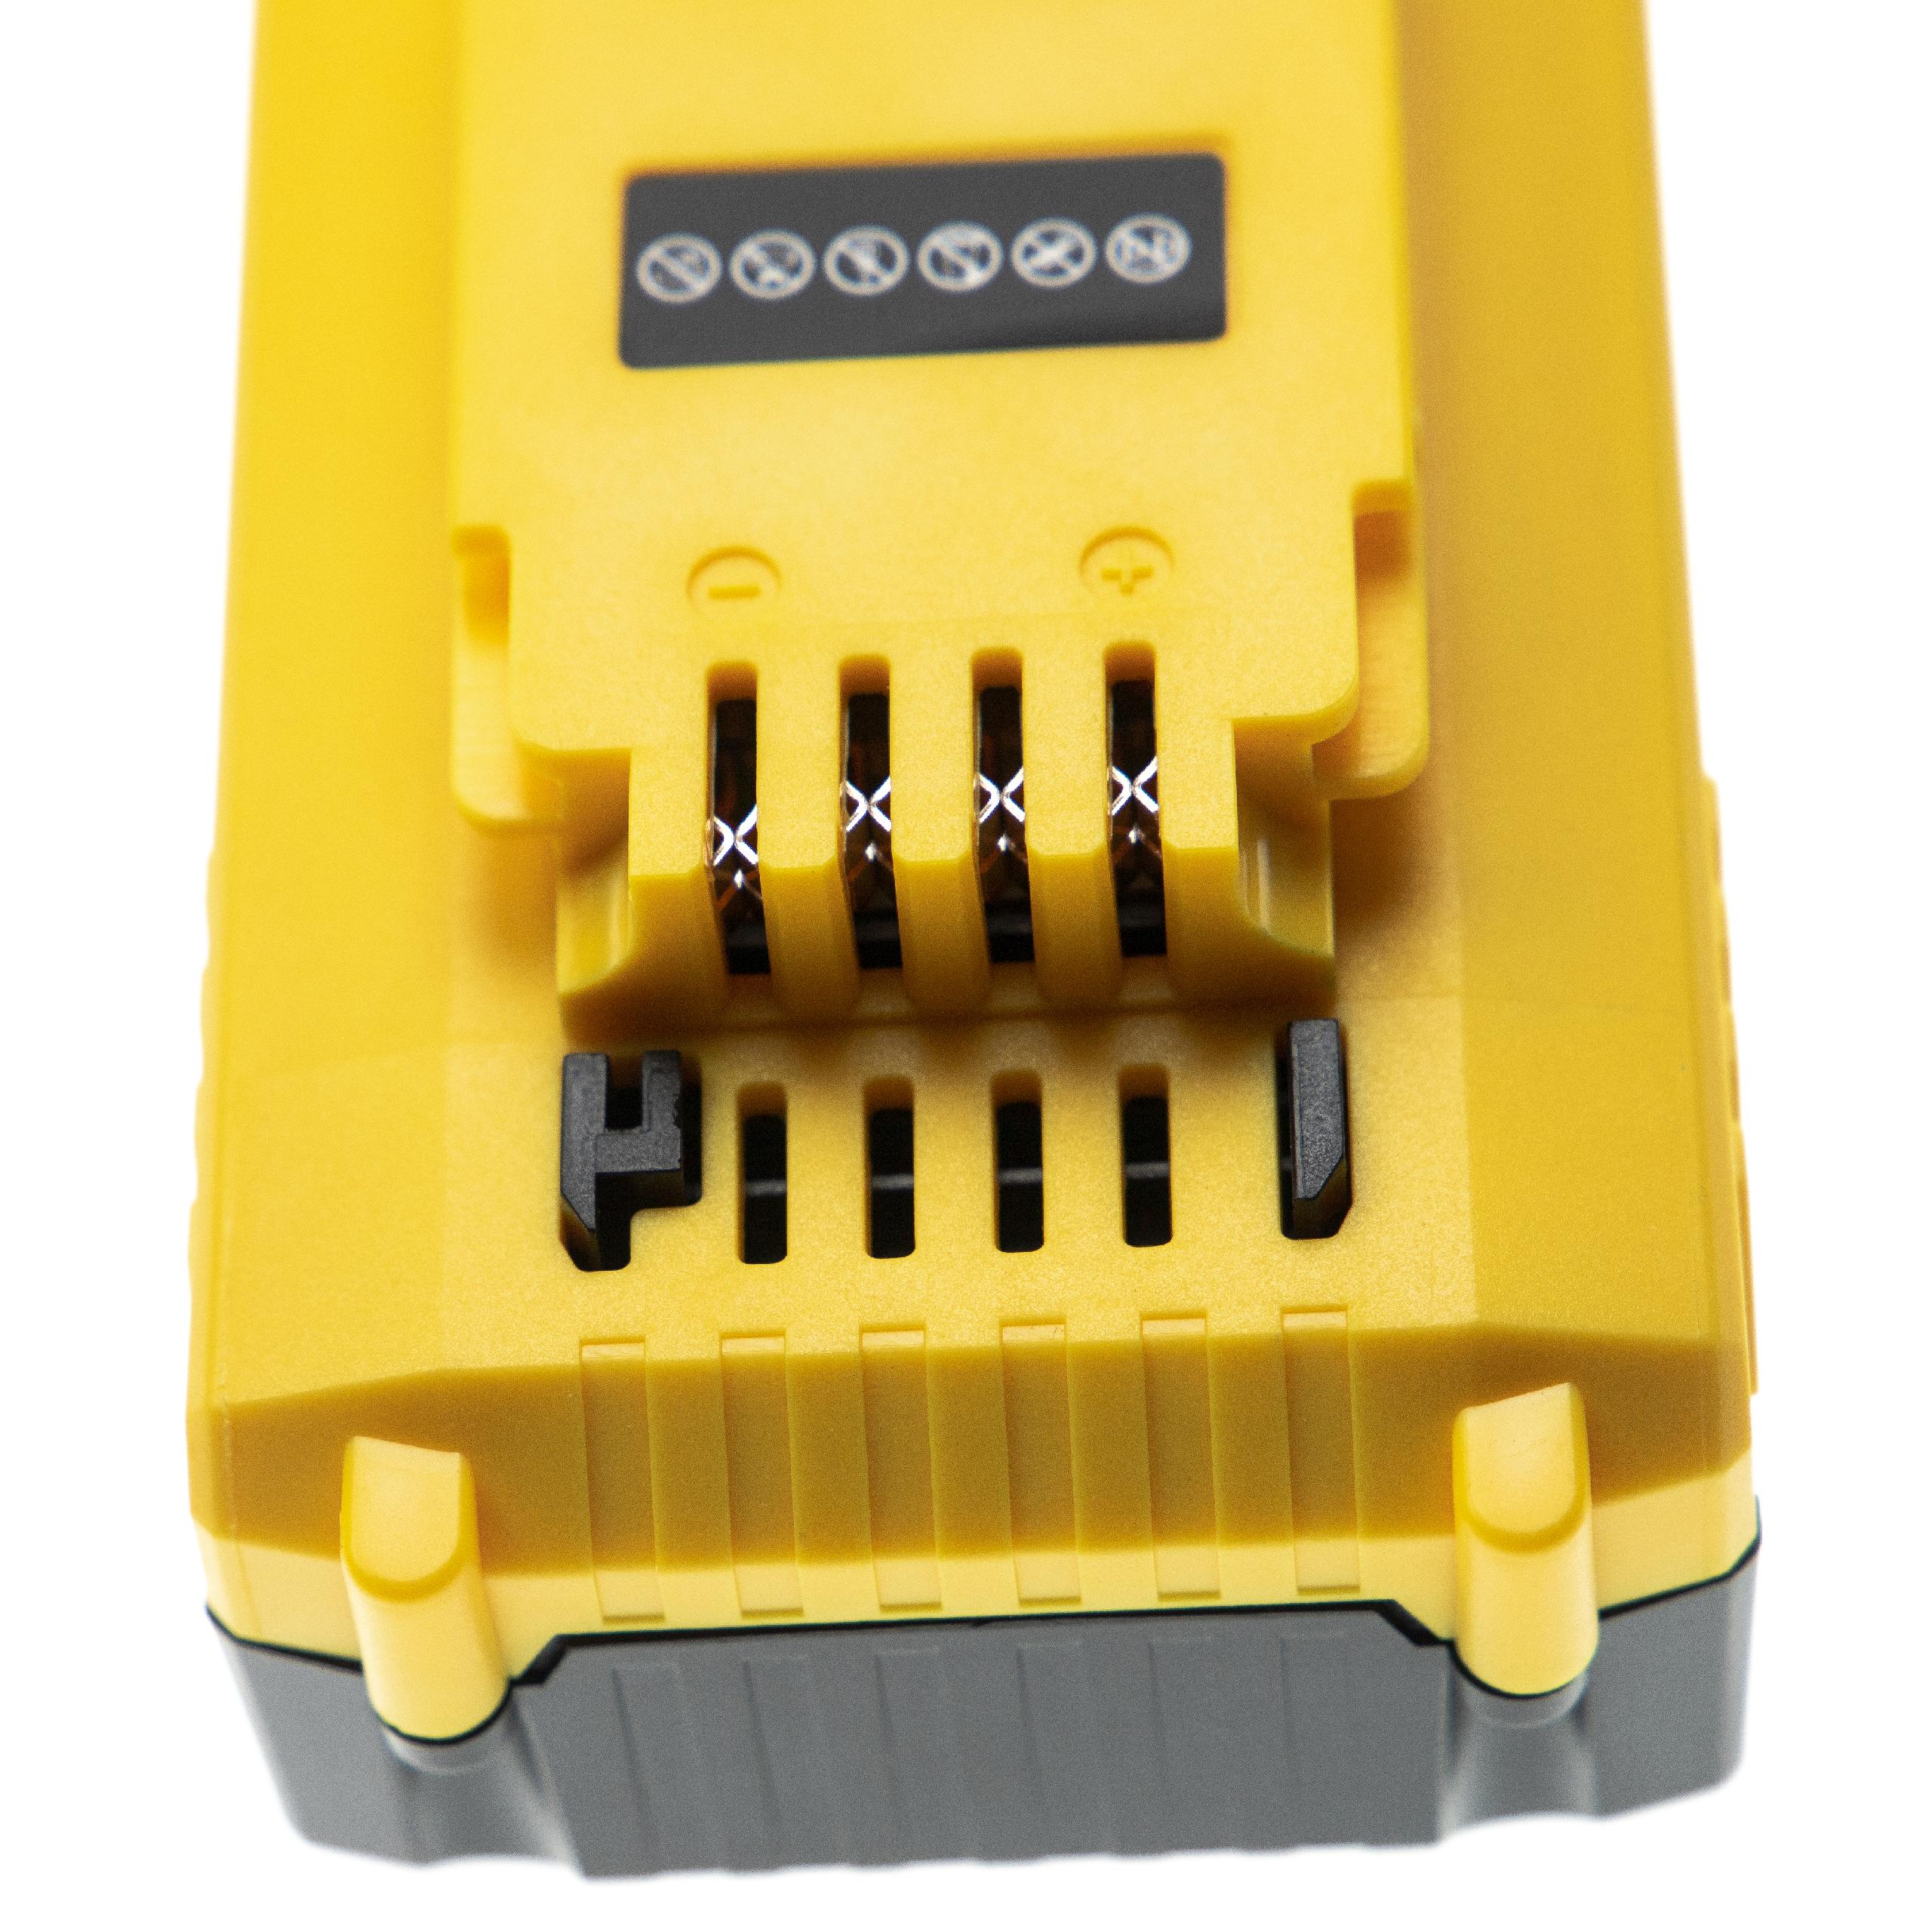 Batterie remplace Stanley FMC687L pour outil électrique - 5000 mAh, 18 V, Li-ion